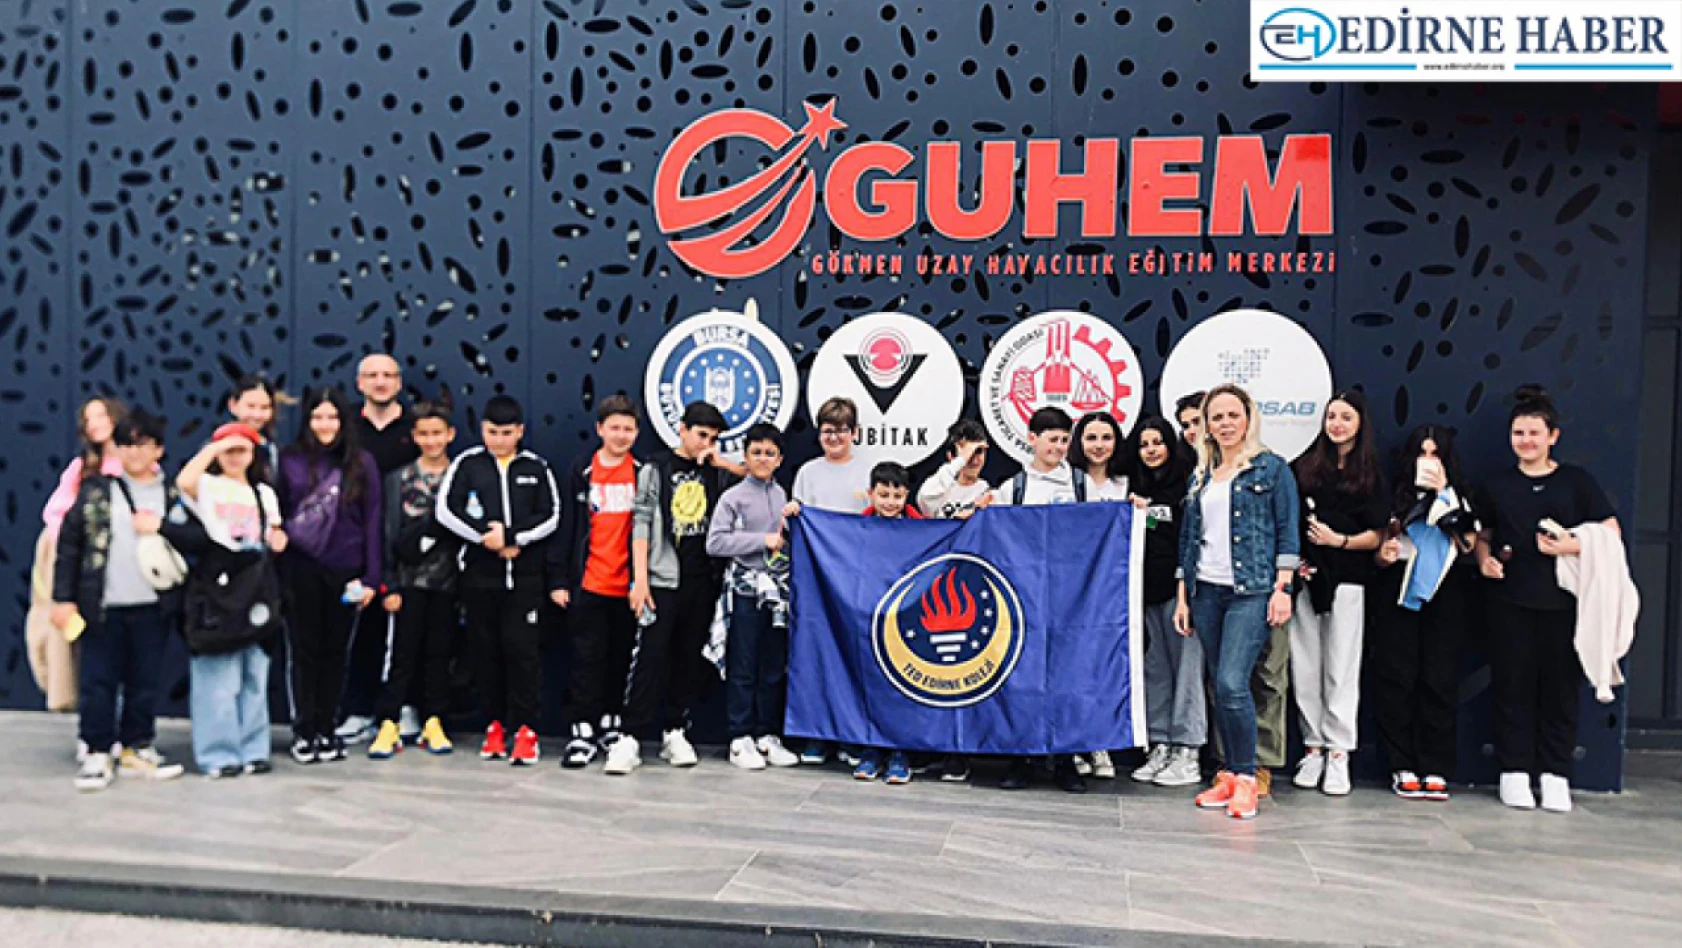 TED Edirne Koleji Ortaokul öğrencilerinden GUHEM'e ziyaret